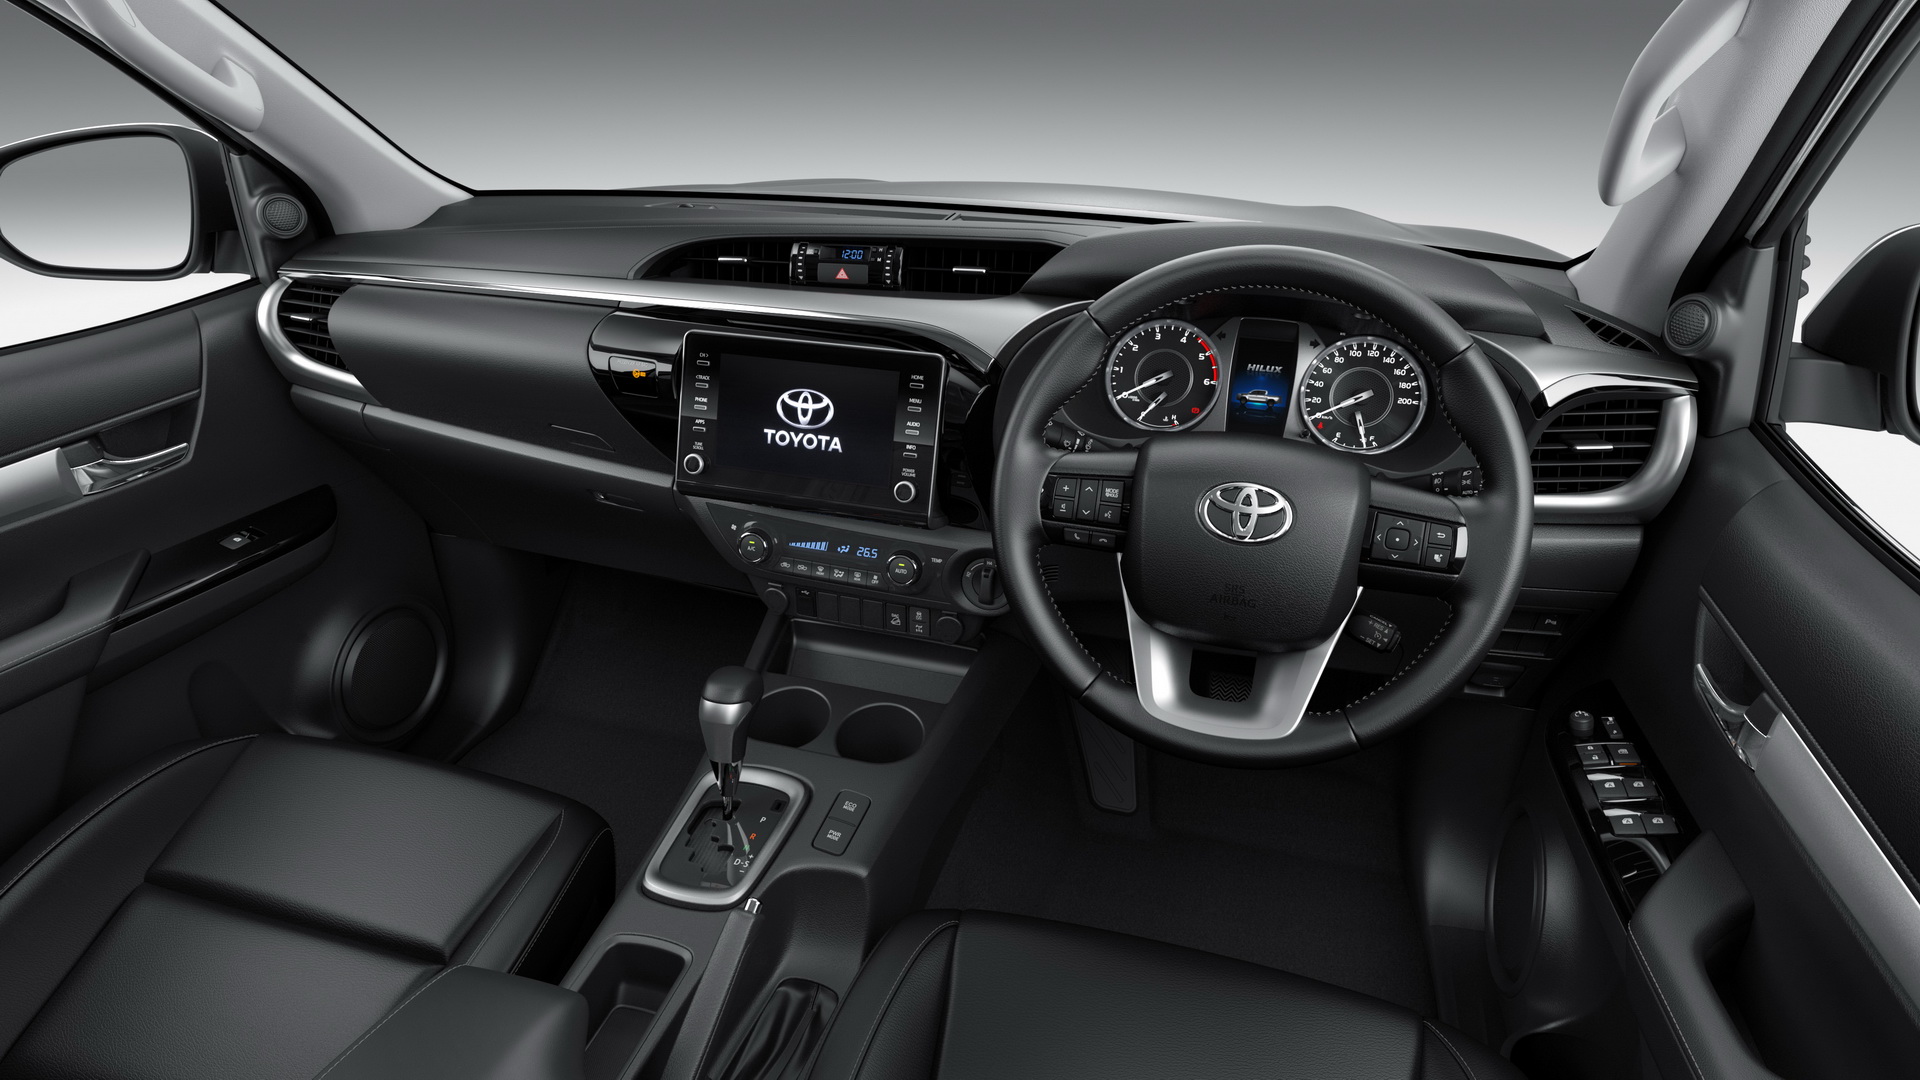 صور تويوتا هايلكس 2021 “90 صورة عالية الجودة” Toyota Hilux 220